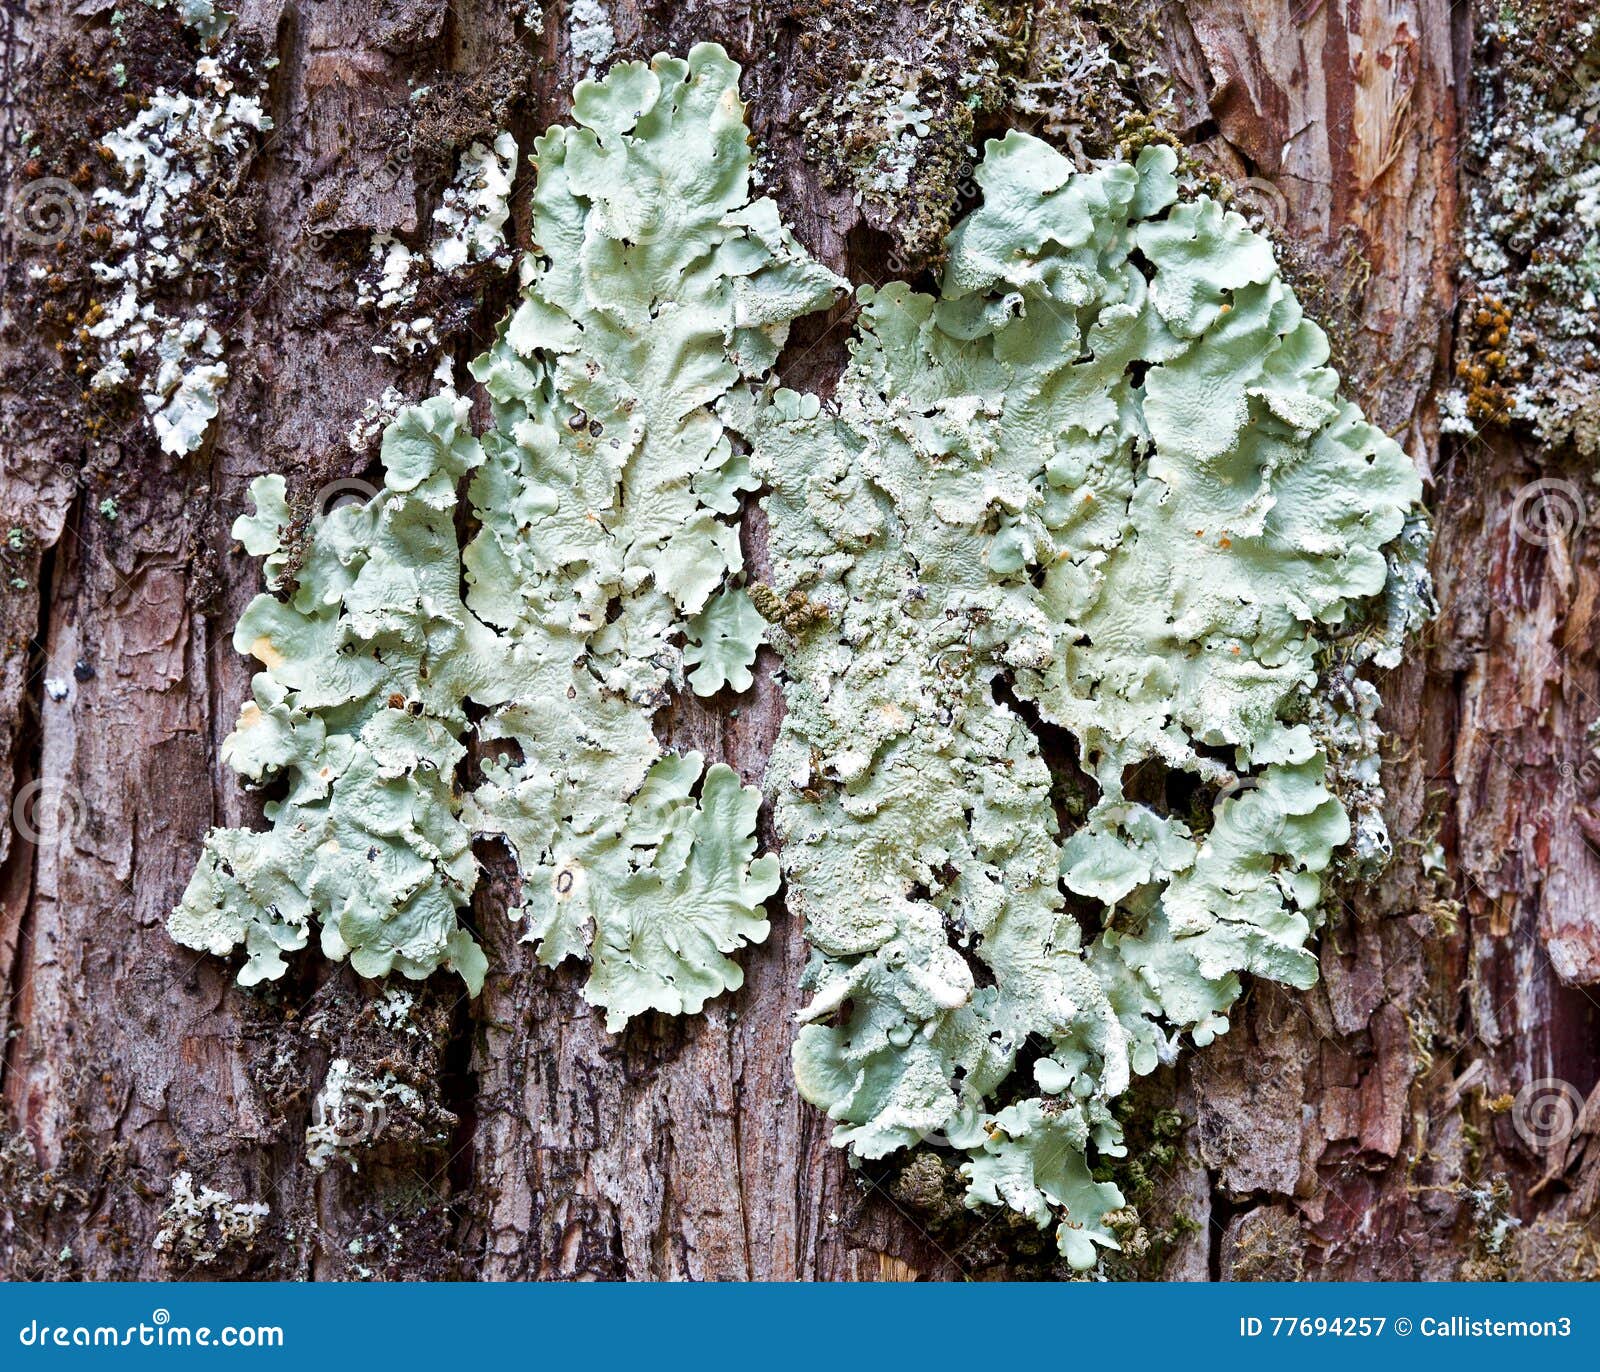 超过 3 张关于“Lichens On Log”和“地衣”的免费图片 - Pixabay